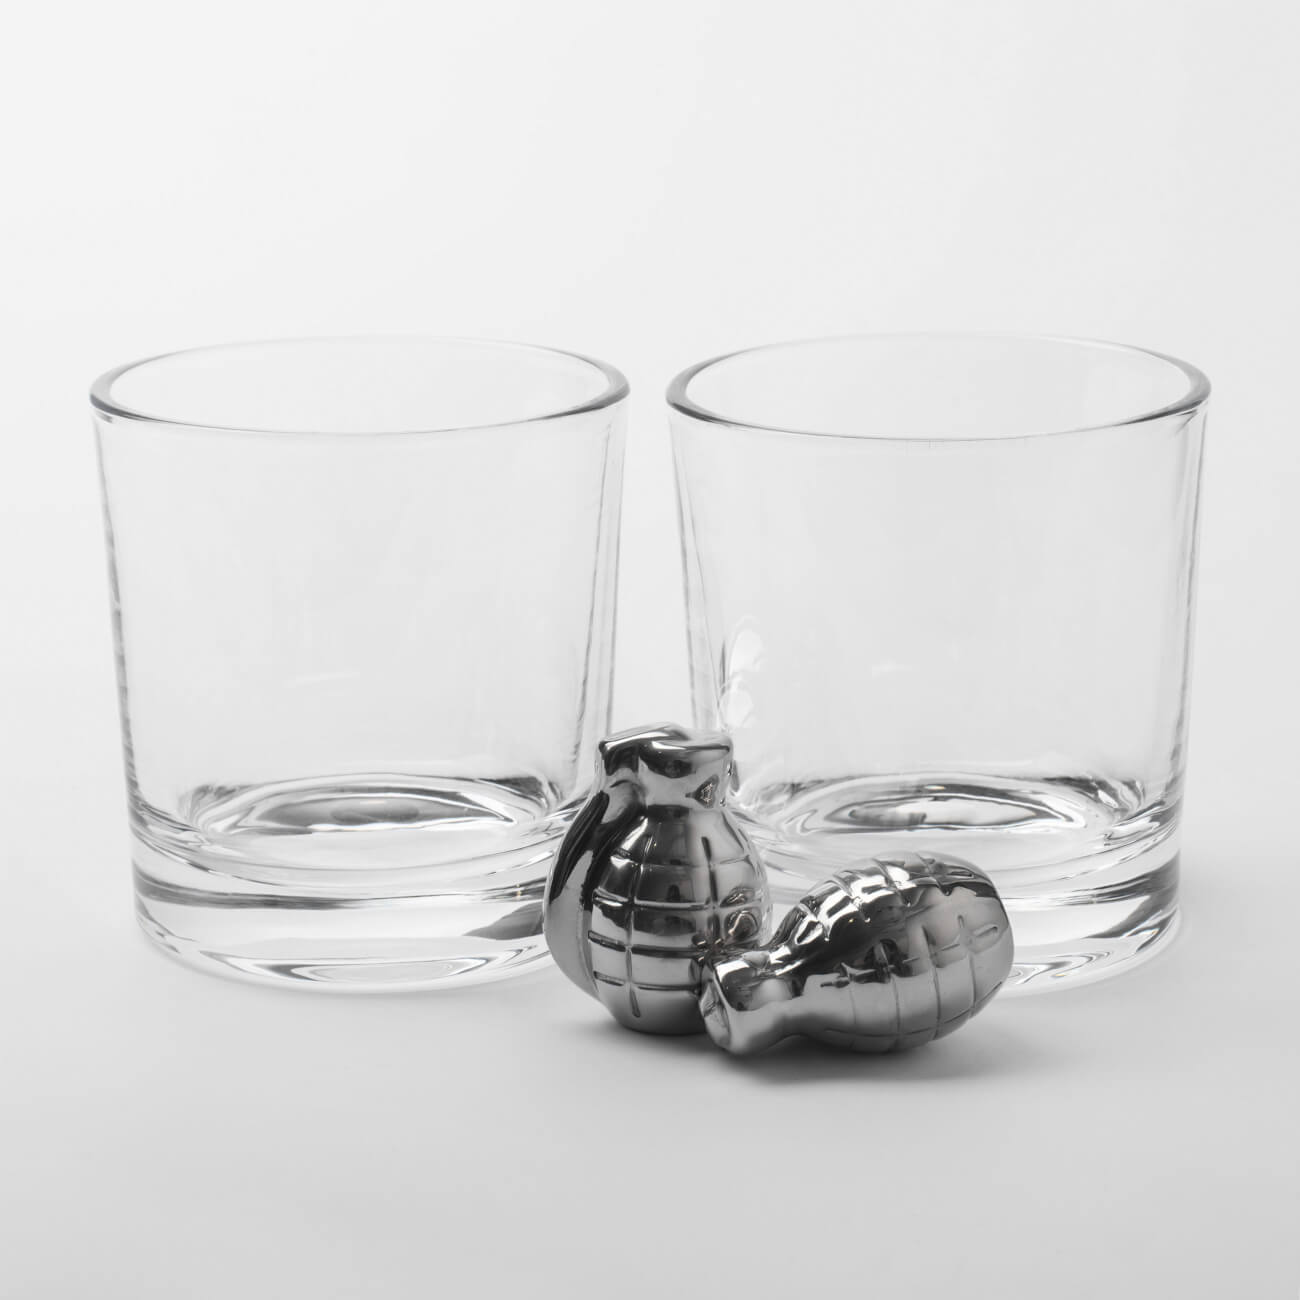 Набор для виски, 2 перс, 4 пр, стаканы/кубики, стекло/сталь, Граната, Bullet набор для виски 2 перс 6 пр стаканы кубики стекло стеатит кракелюр ice